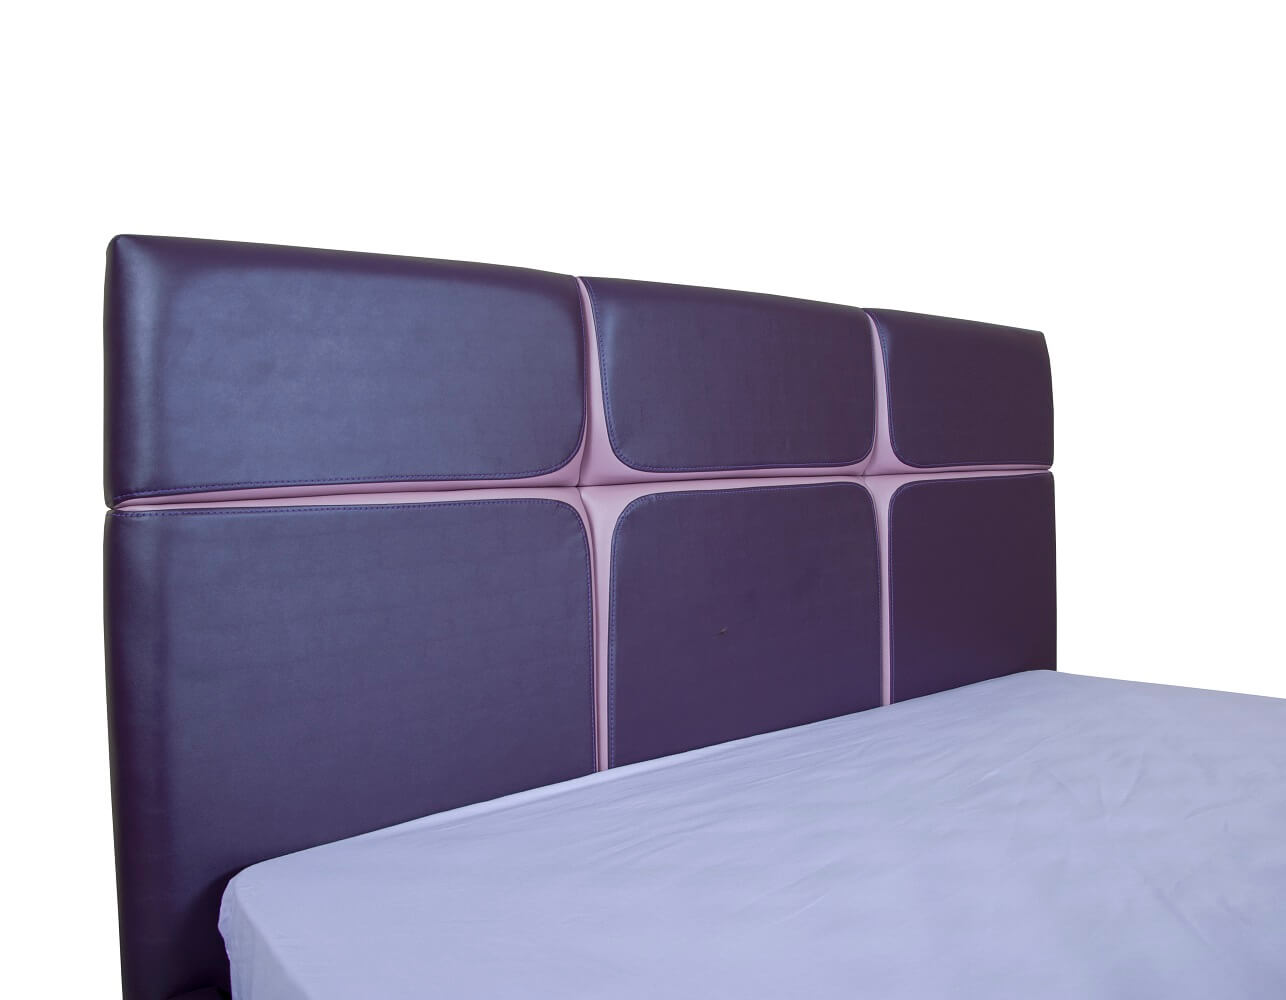 Мягкая кровать Стелла с подъемным механизмом - фото 3 - изголовье